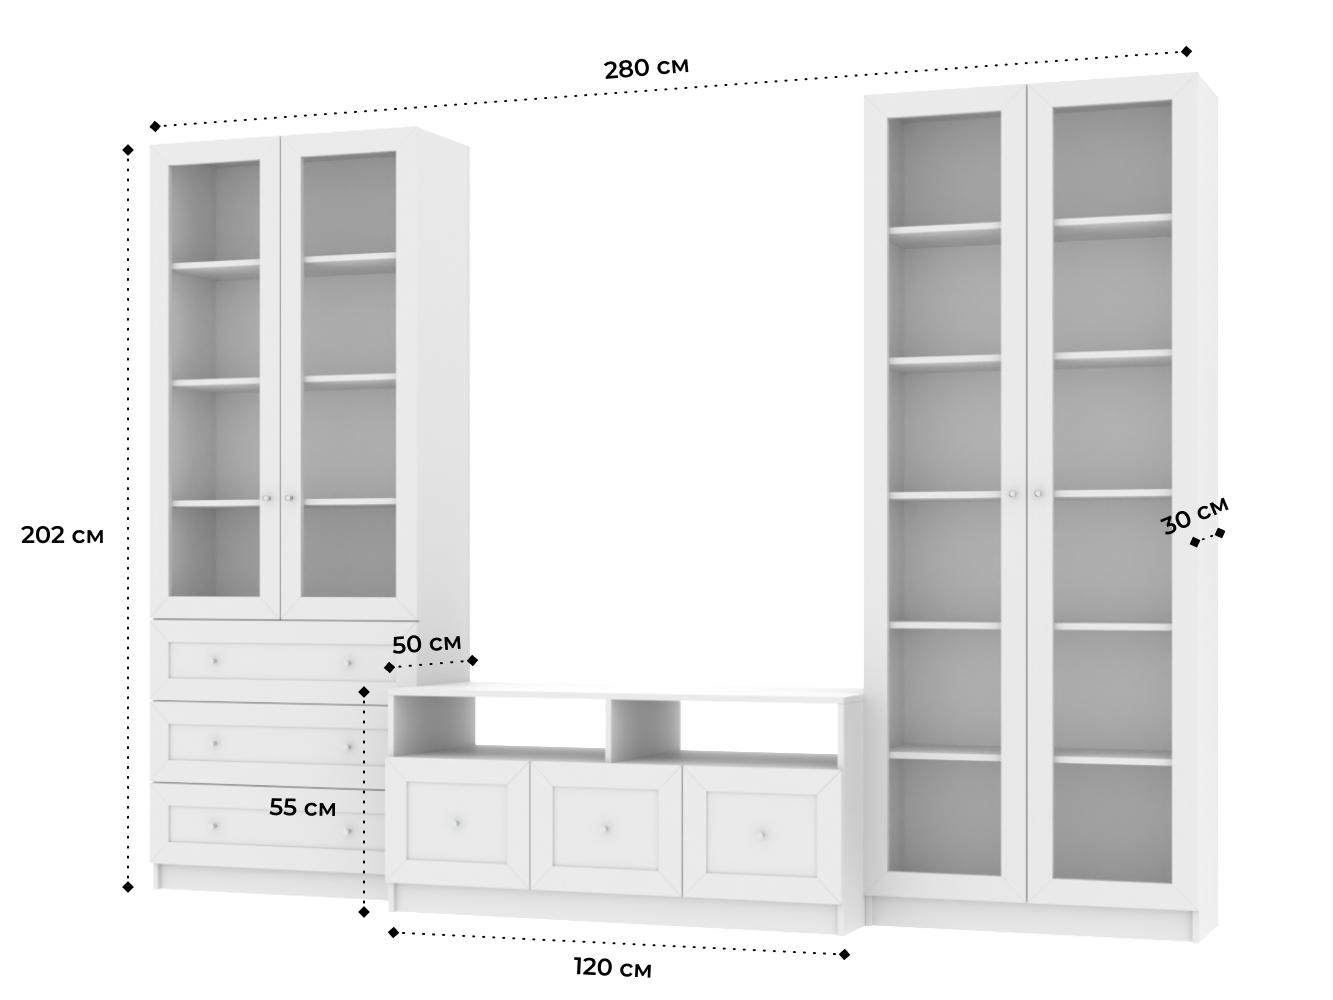 Изображение товара Книжный шкаф Билли 374 white ИКЕА (IKEA) с тумбой под телевизор, 280x40x202 см на сайте adeta.ru